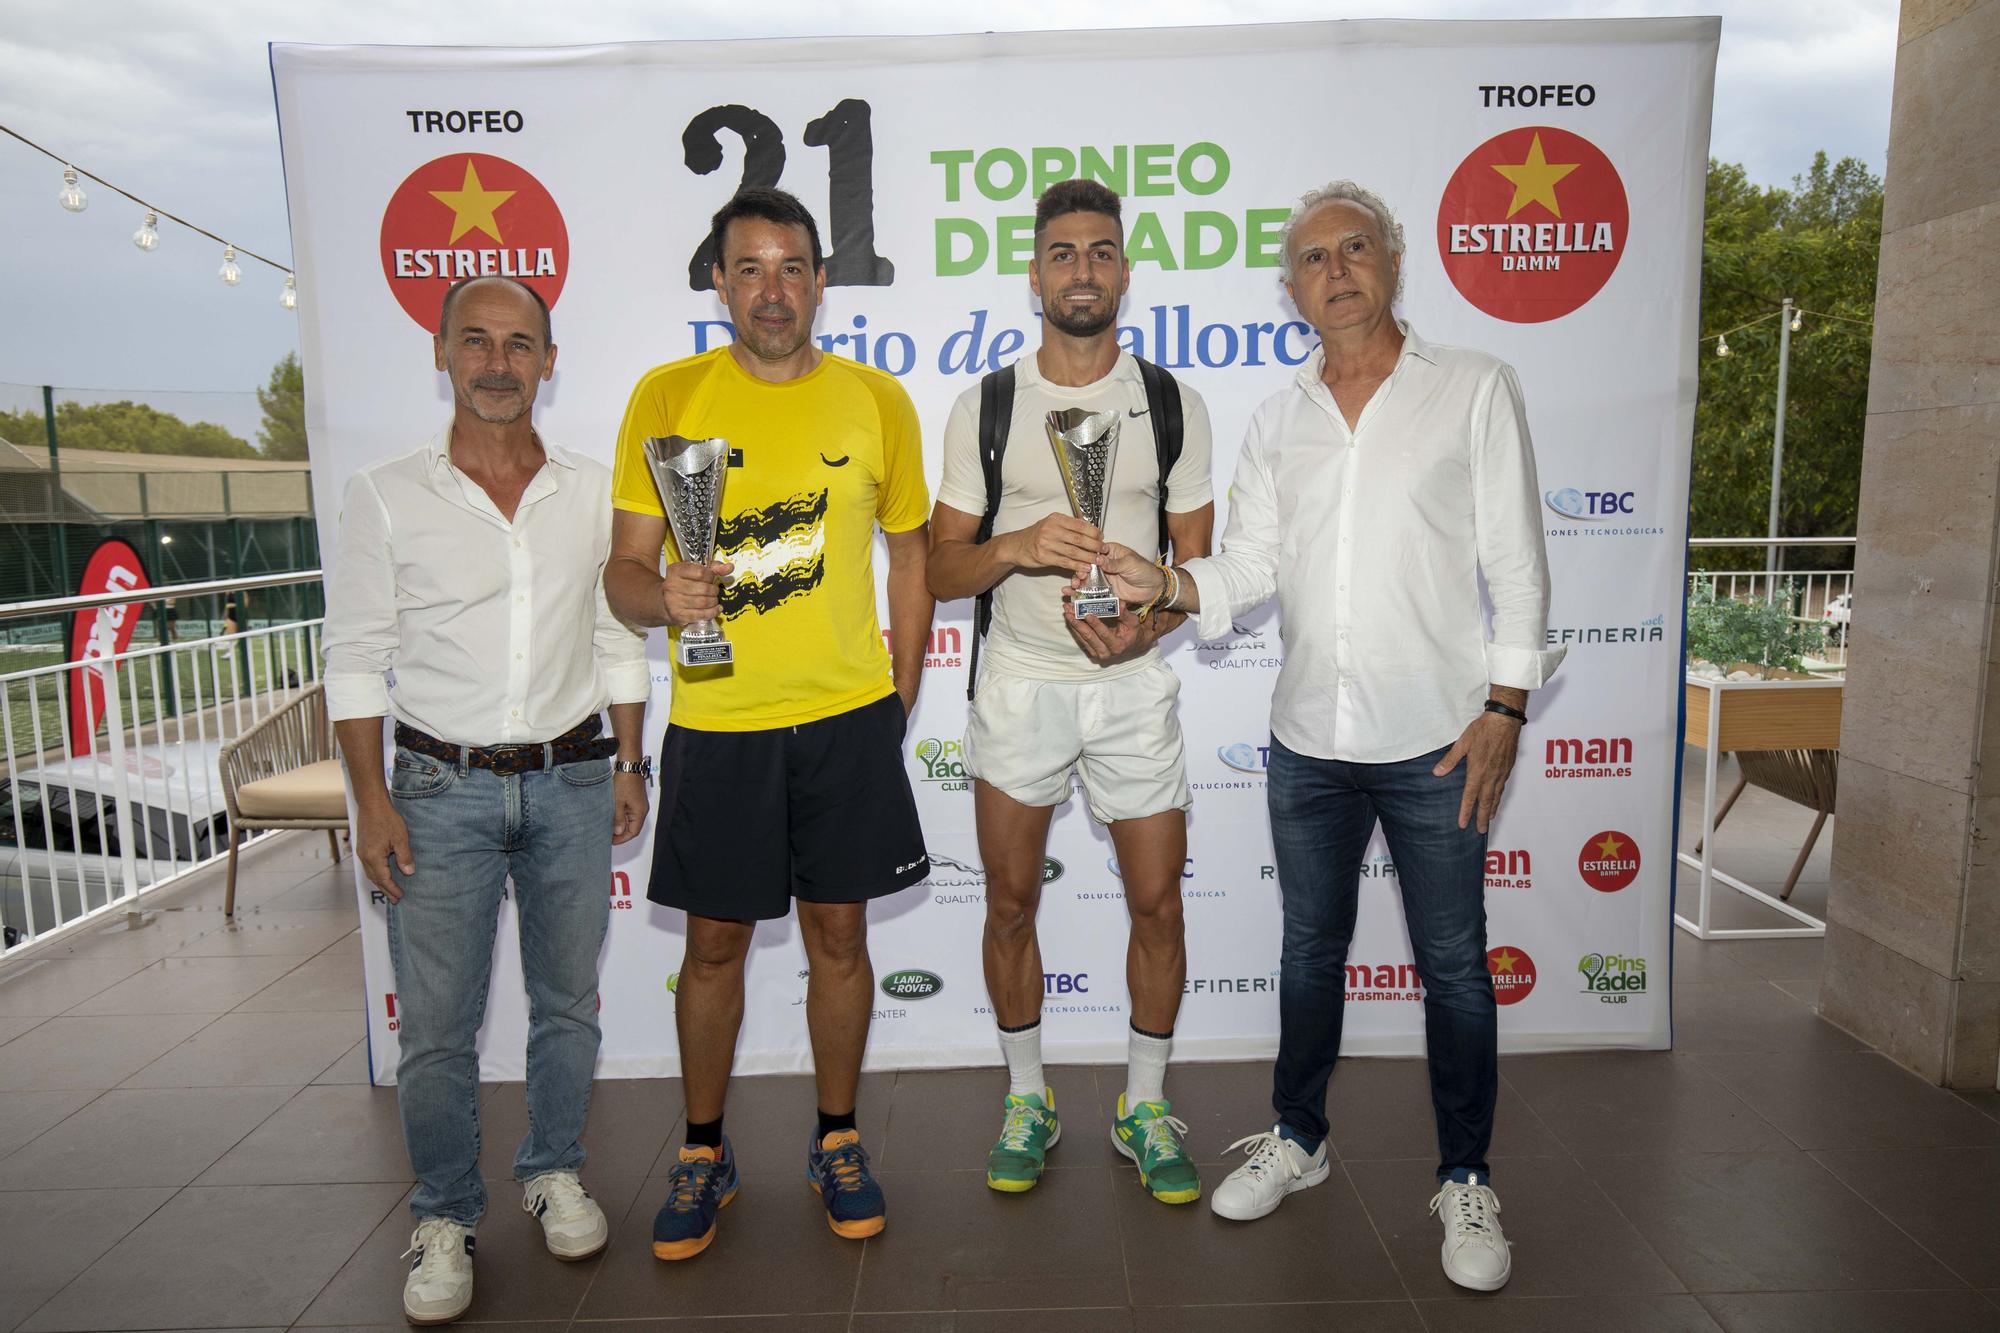 Finalistas 3ª categoría masculina. Jaime Fernández y Miguel Mesquida fueron reconocidos como finalistas por Juan Seguí (Obras Man) y Sebastián Oliver (D.M.).